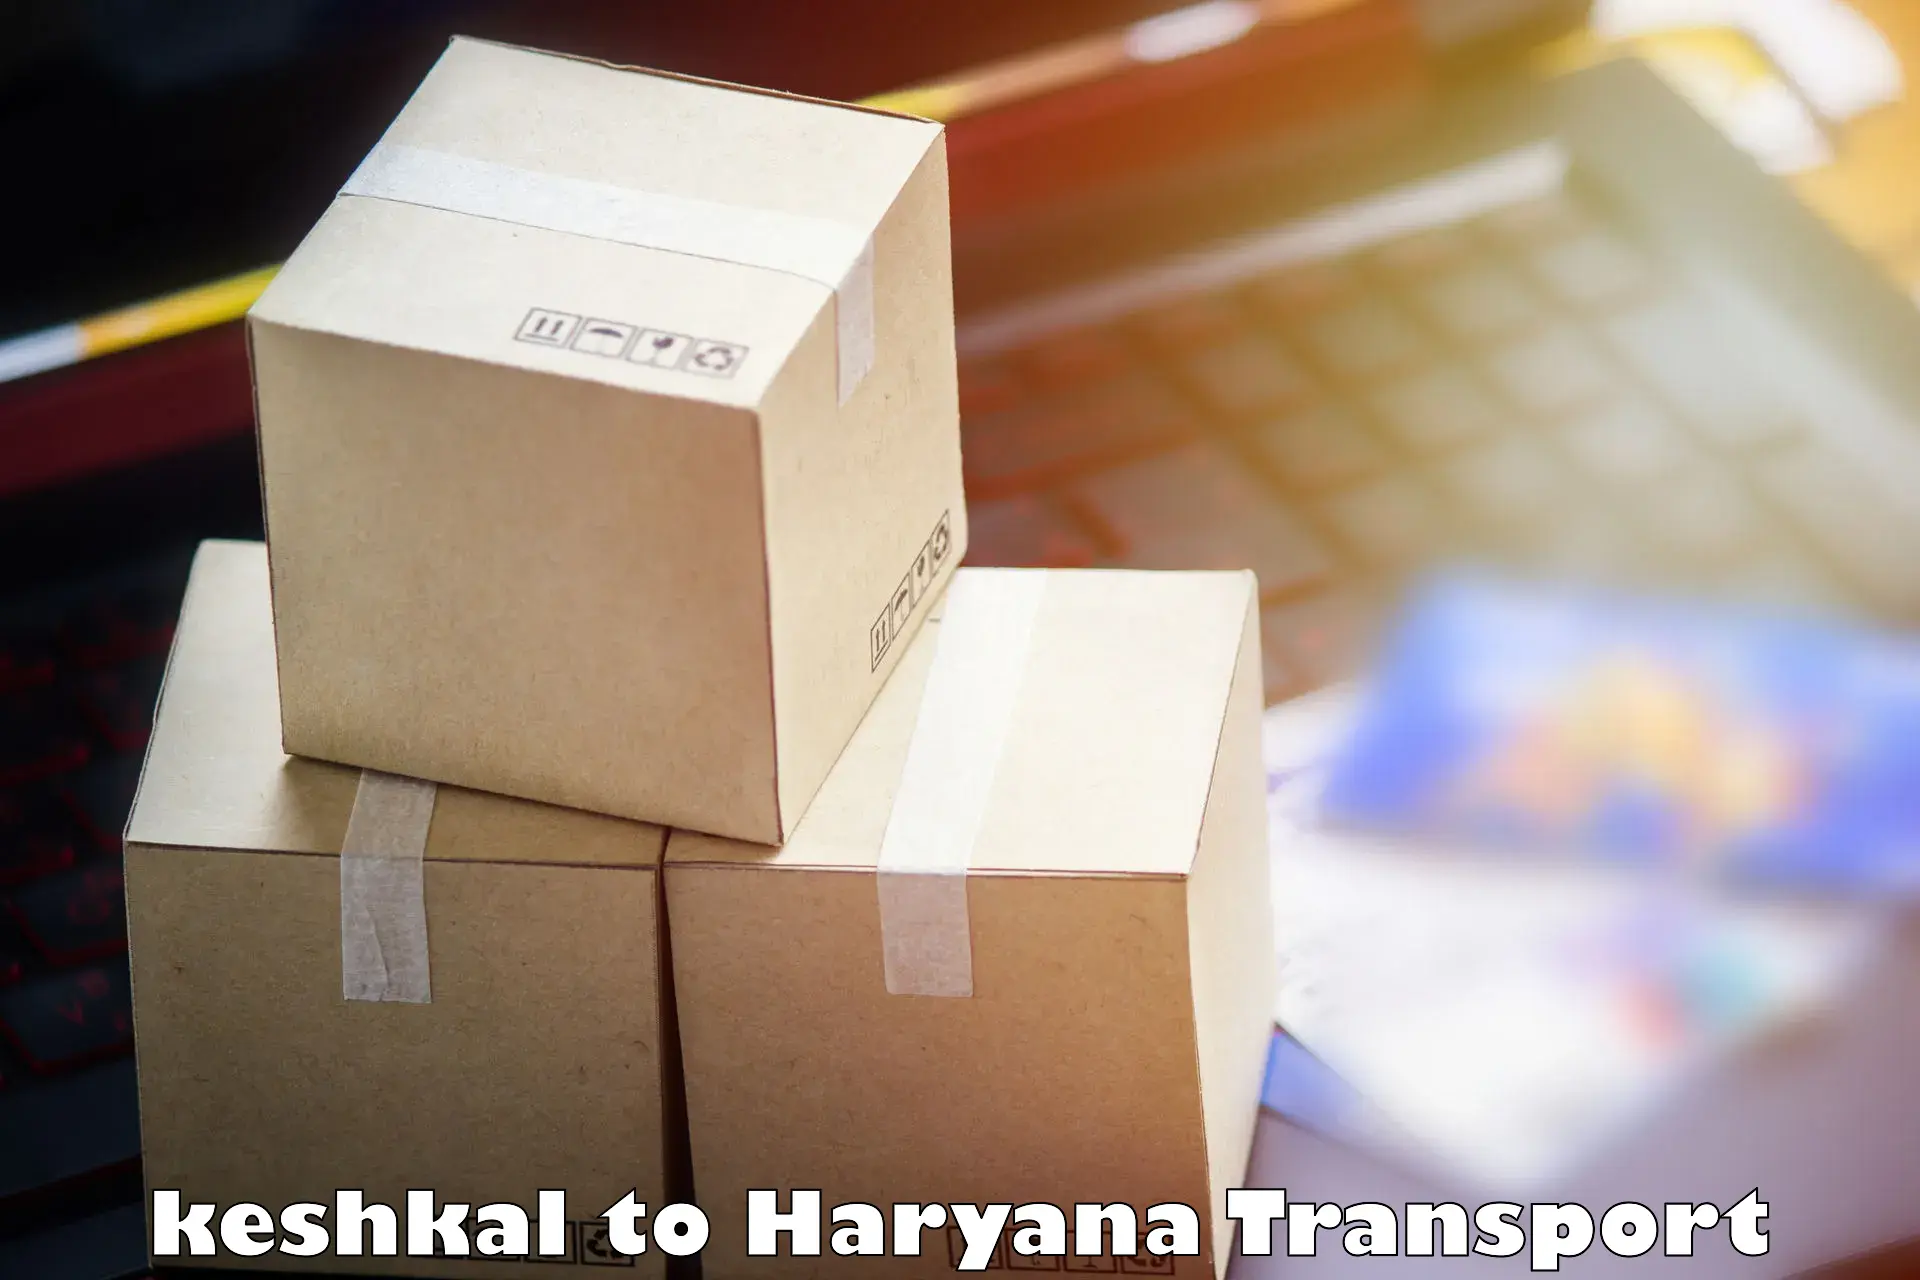 Cargo transportation services keshkal to Gohana